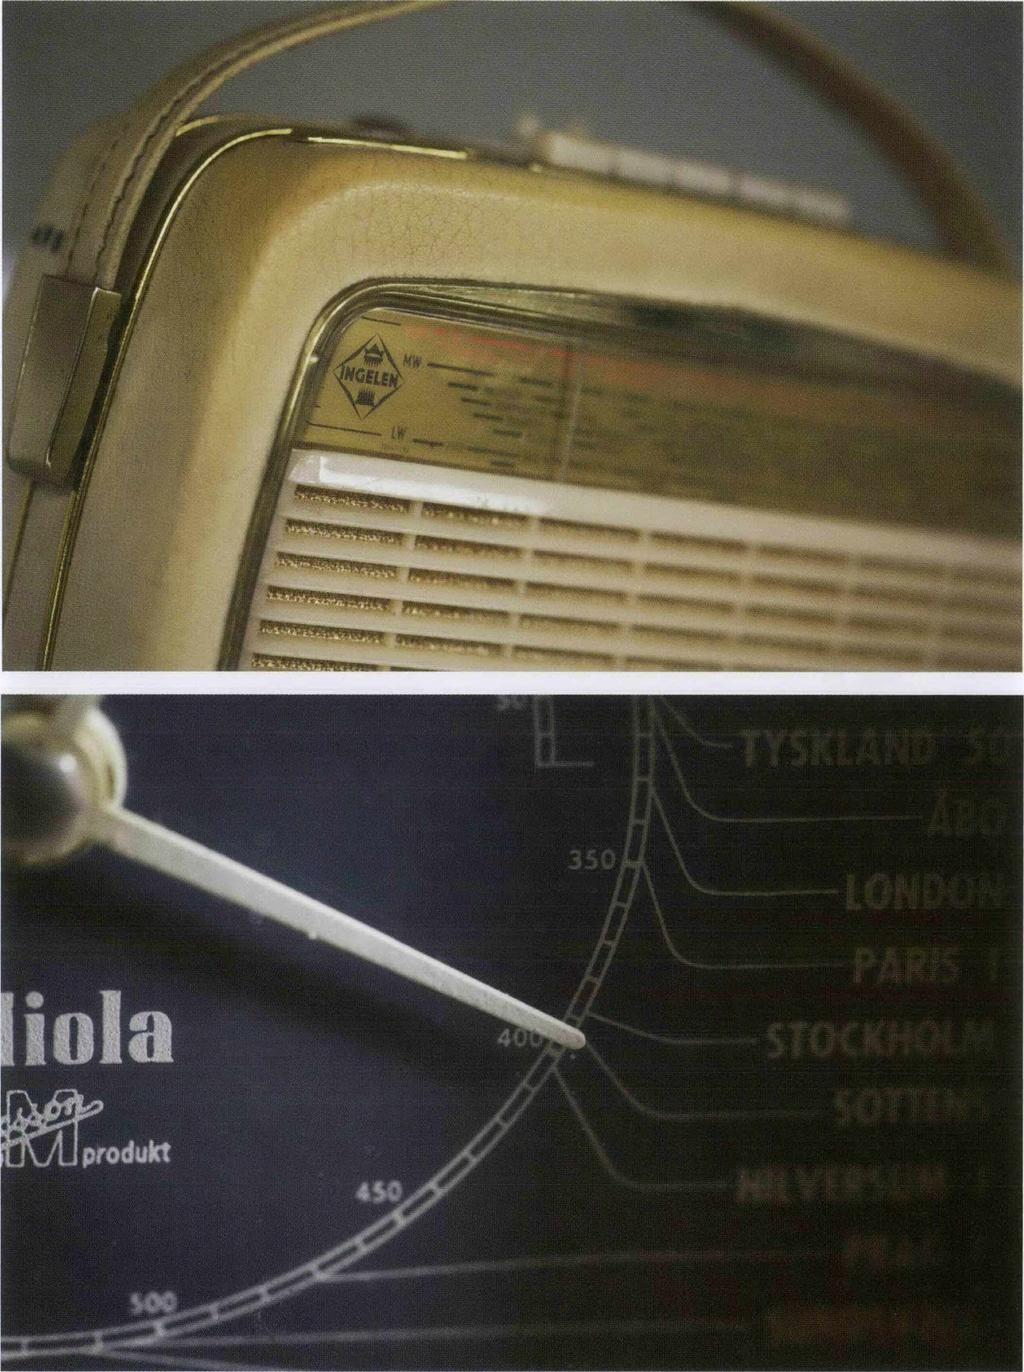 Transistorn förändrade hur vi använde radion. Många kallade mottagaren för»transistor». I denna radio från österrikiska Ingelen år 1960 finns elva transistorer och batterierna räckte länge.